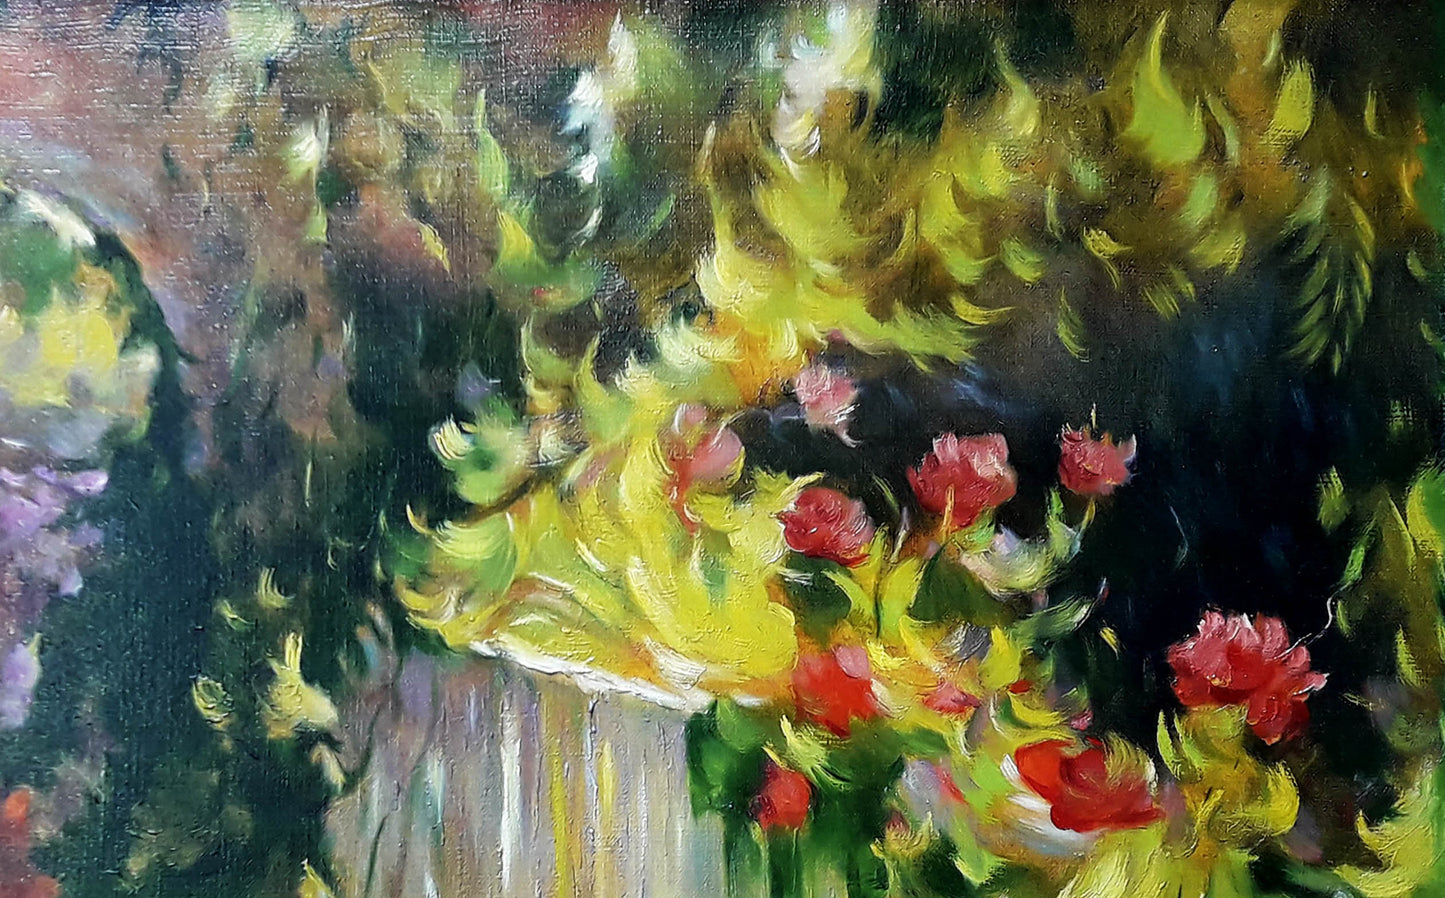 The oil painting "Summer in the Garden" by Vasily Korkishko